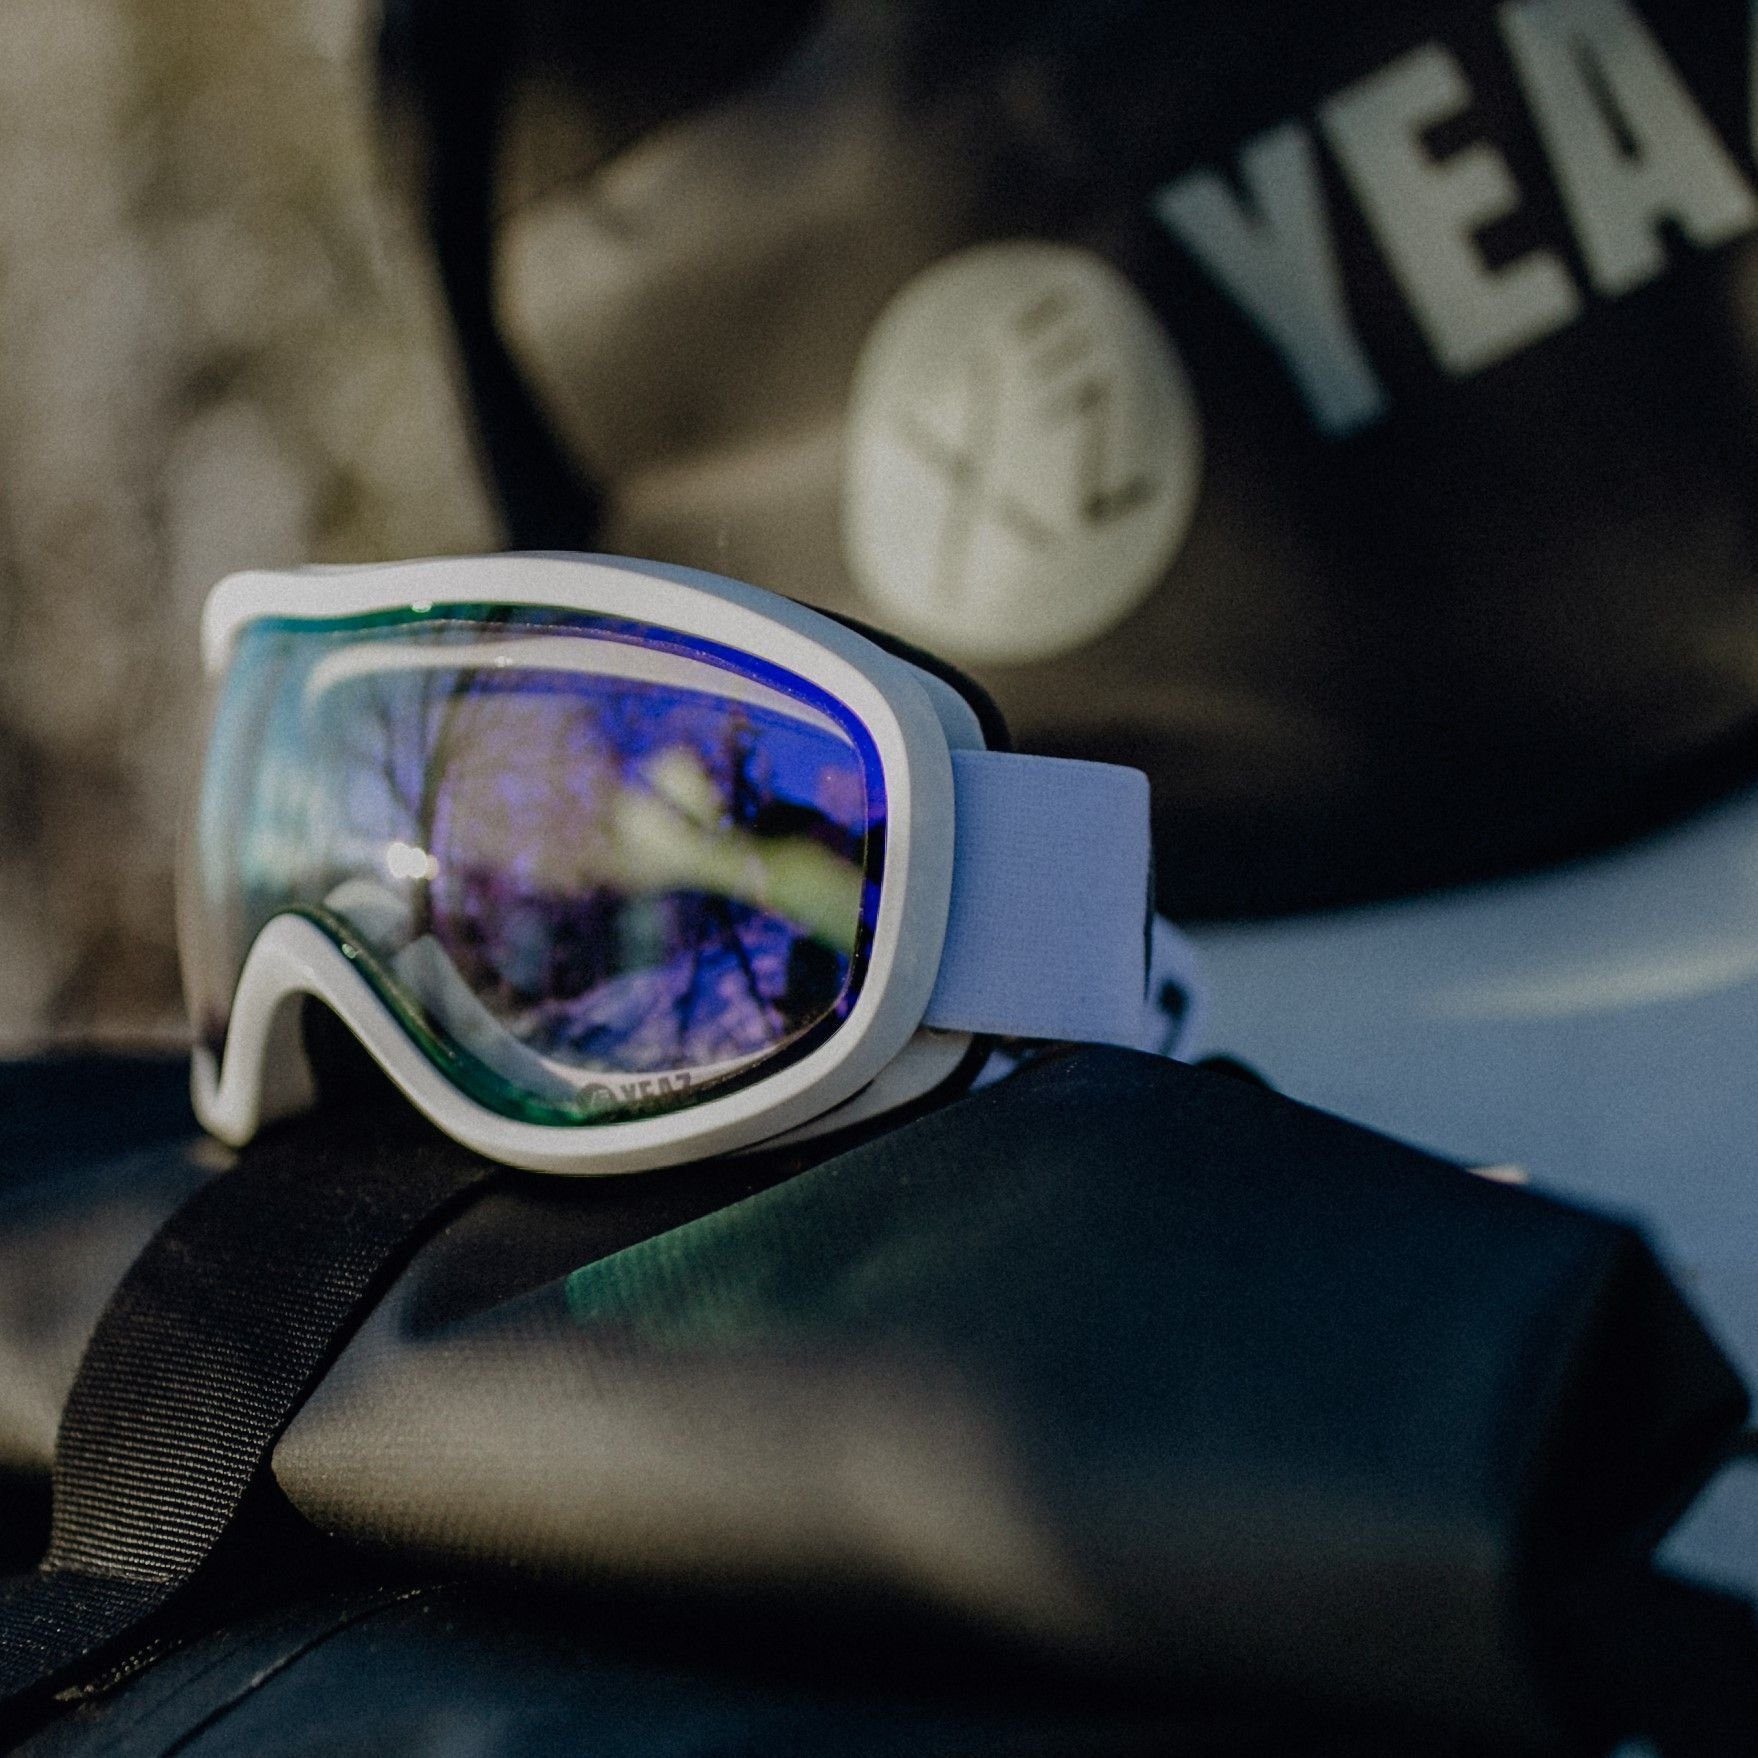 YEAZ Skibrille STEEZE ski- für Premium-Ski- Jugendliche snowboard-brille und violett/weiss, Snowboardbrille und und Erwachsene